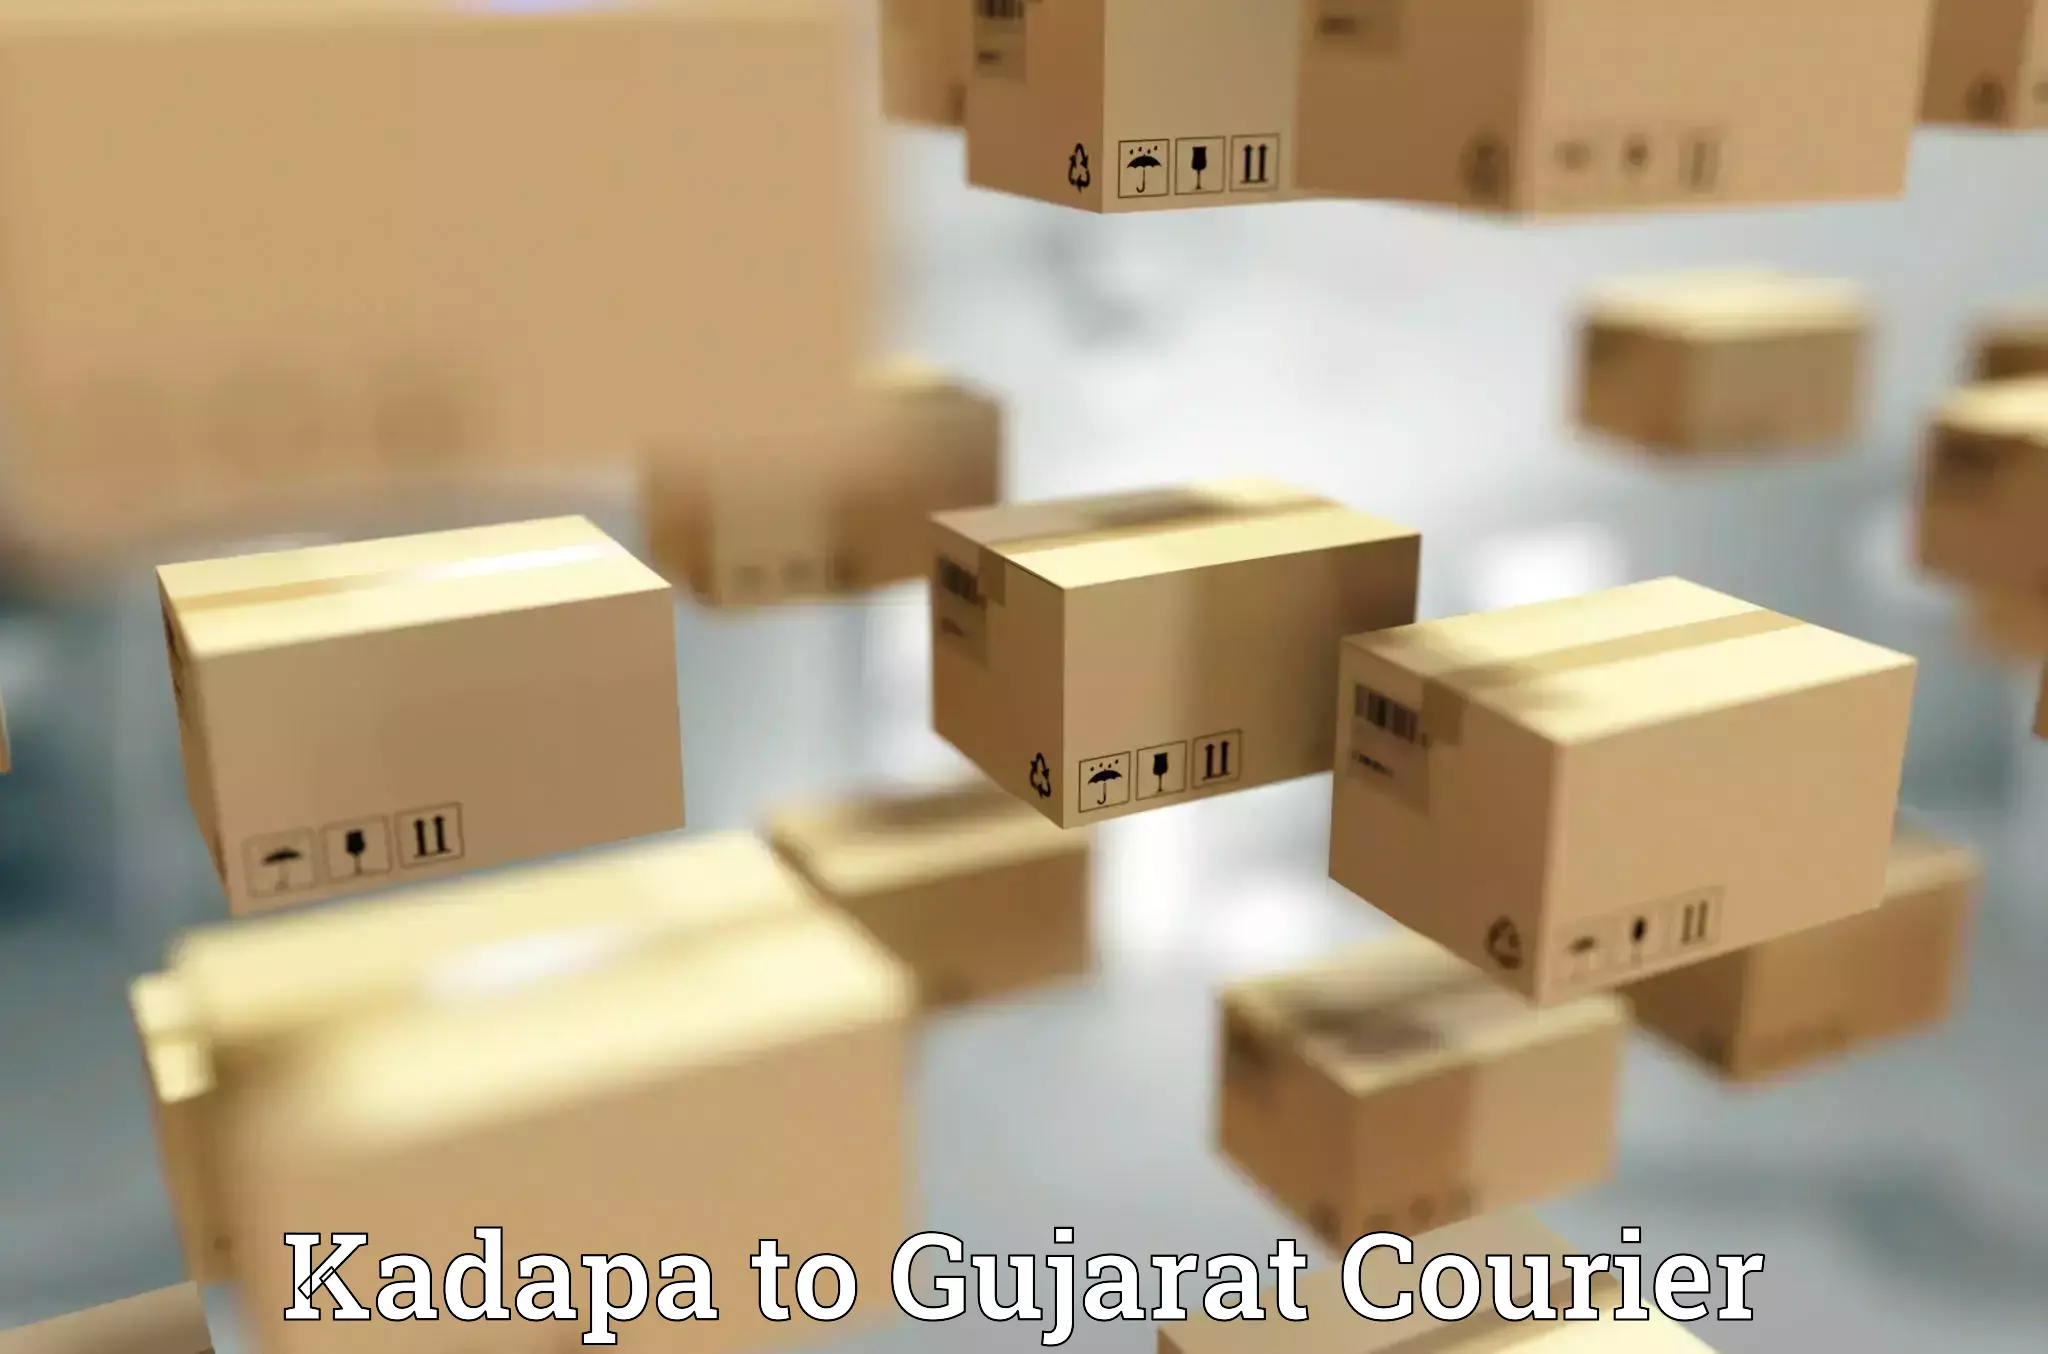 Global delivery options Kadapa to Kadana